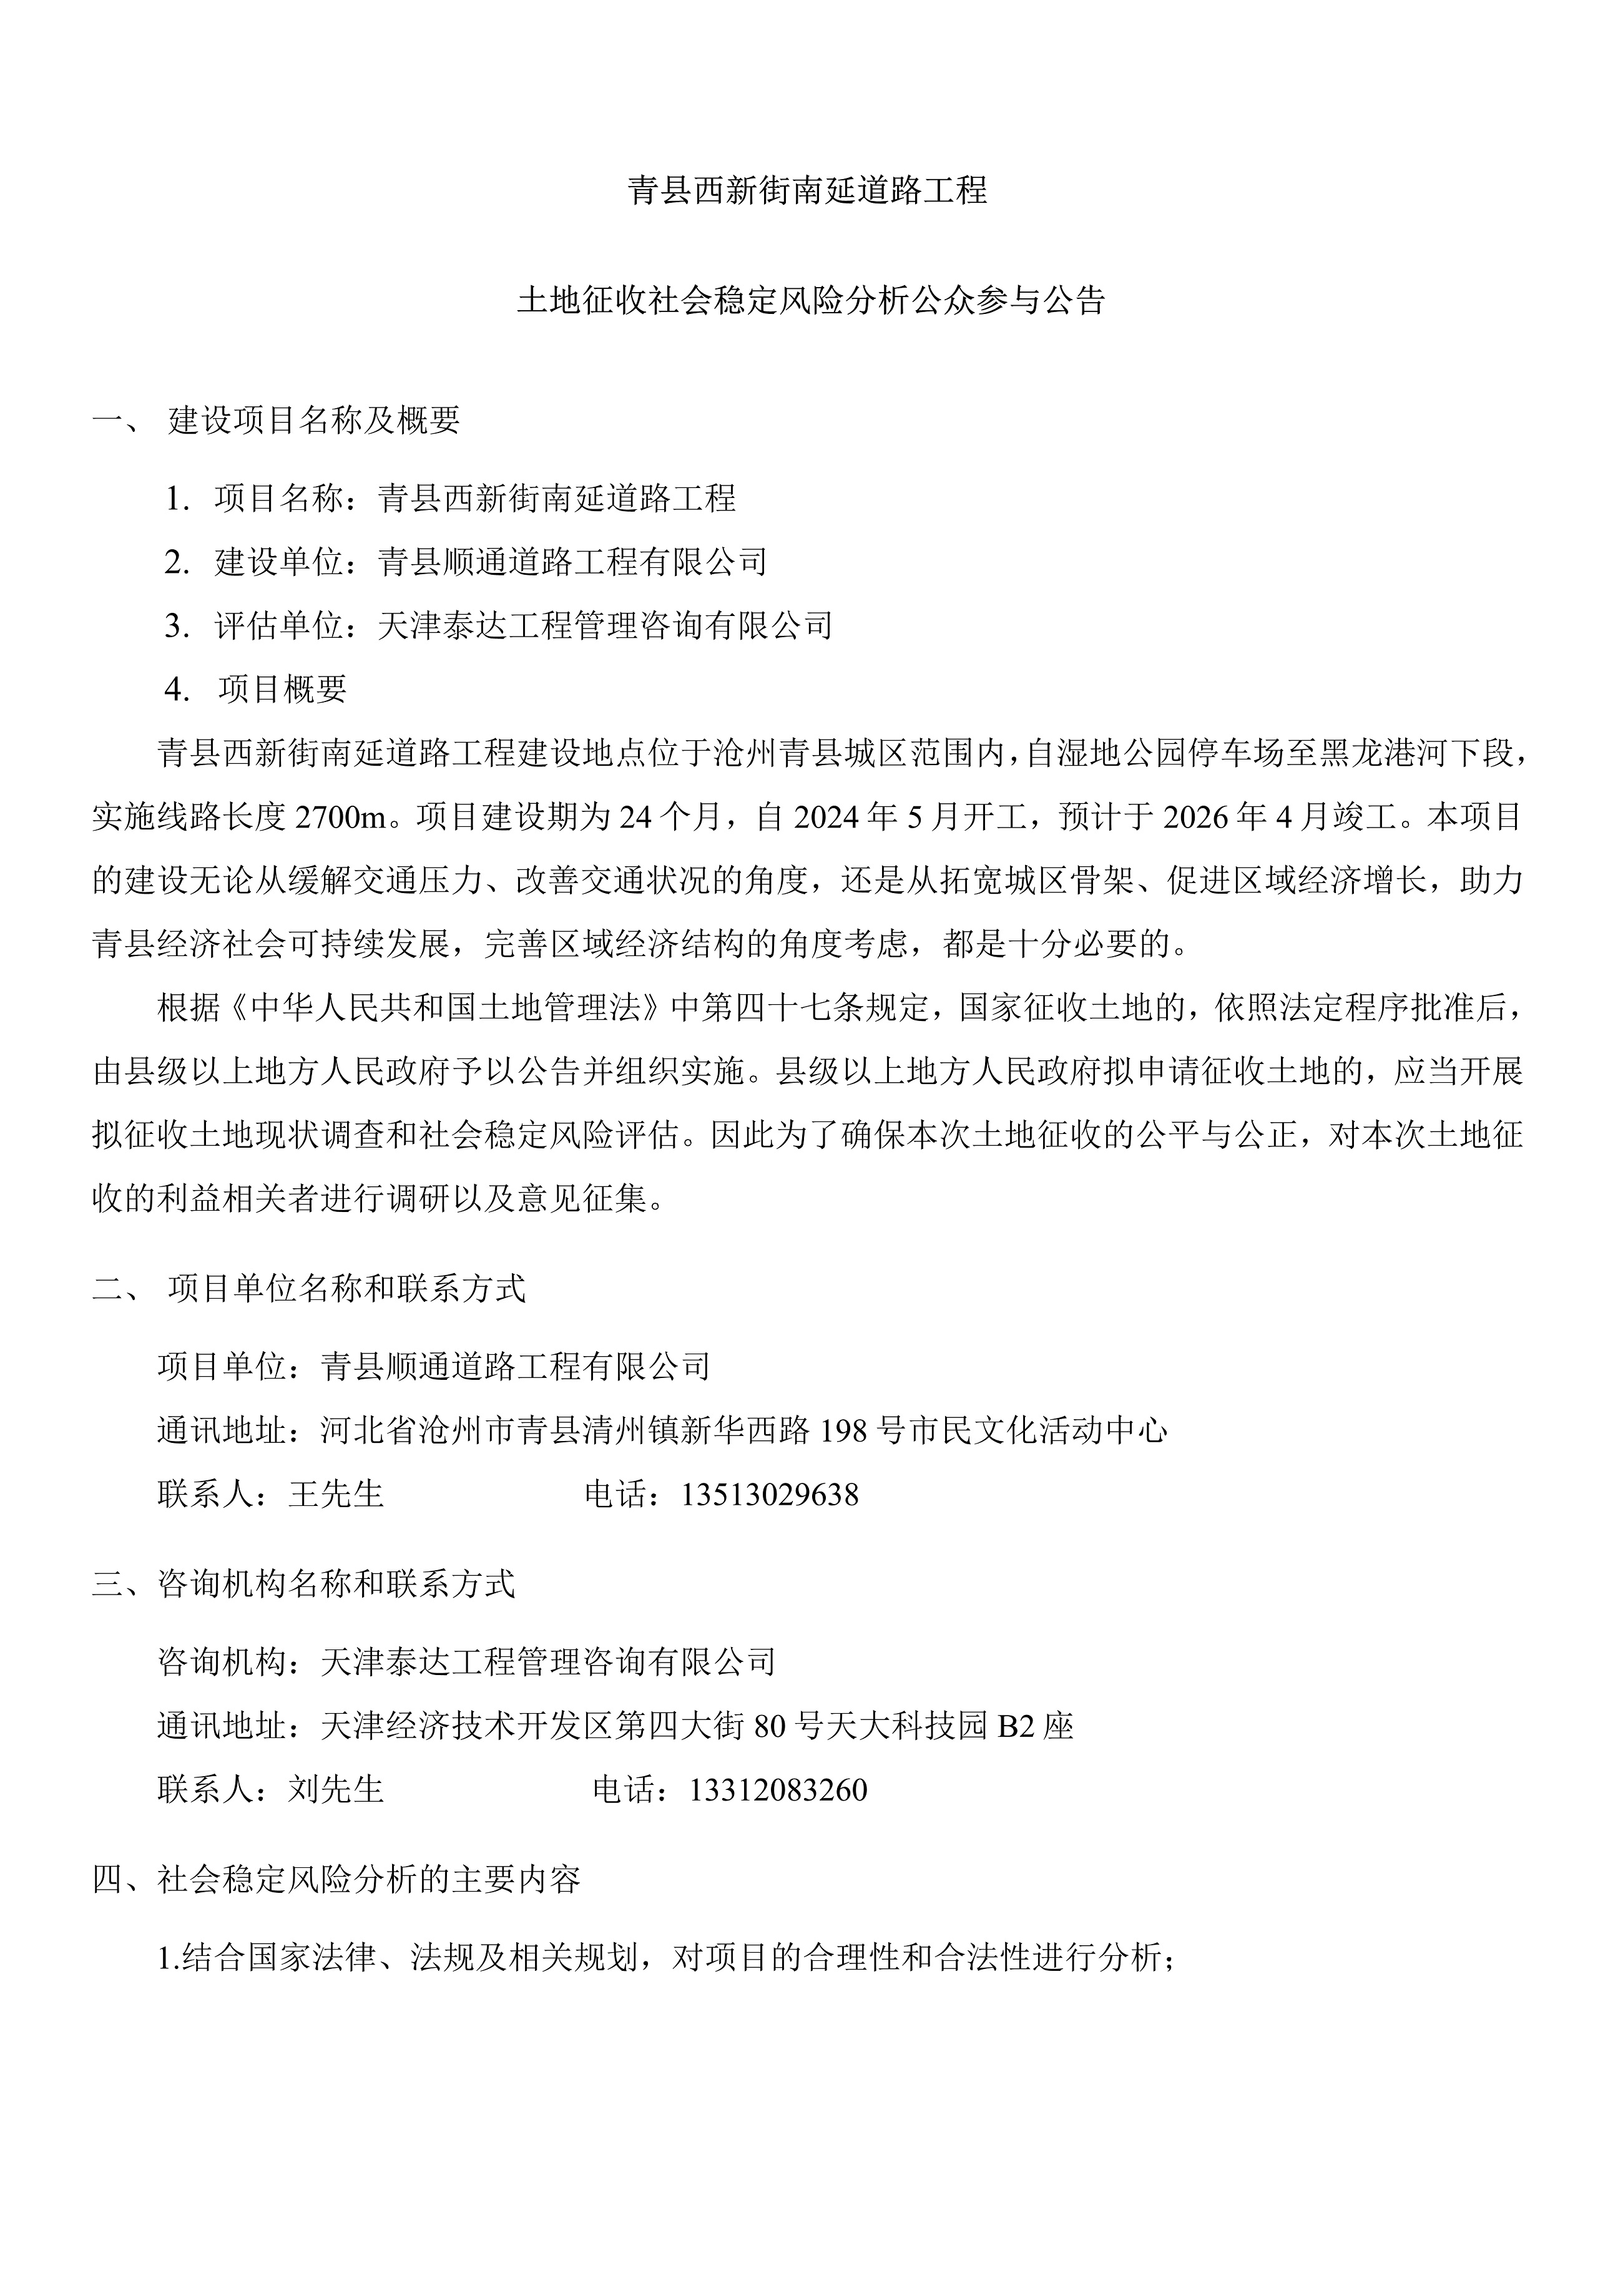 青县西新街南延道路工程土地征收社会稳定风险分析公告_1.jpg